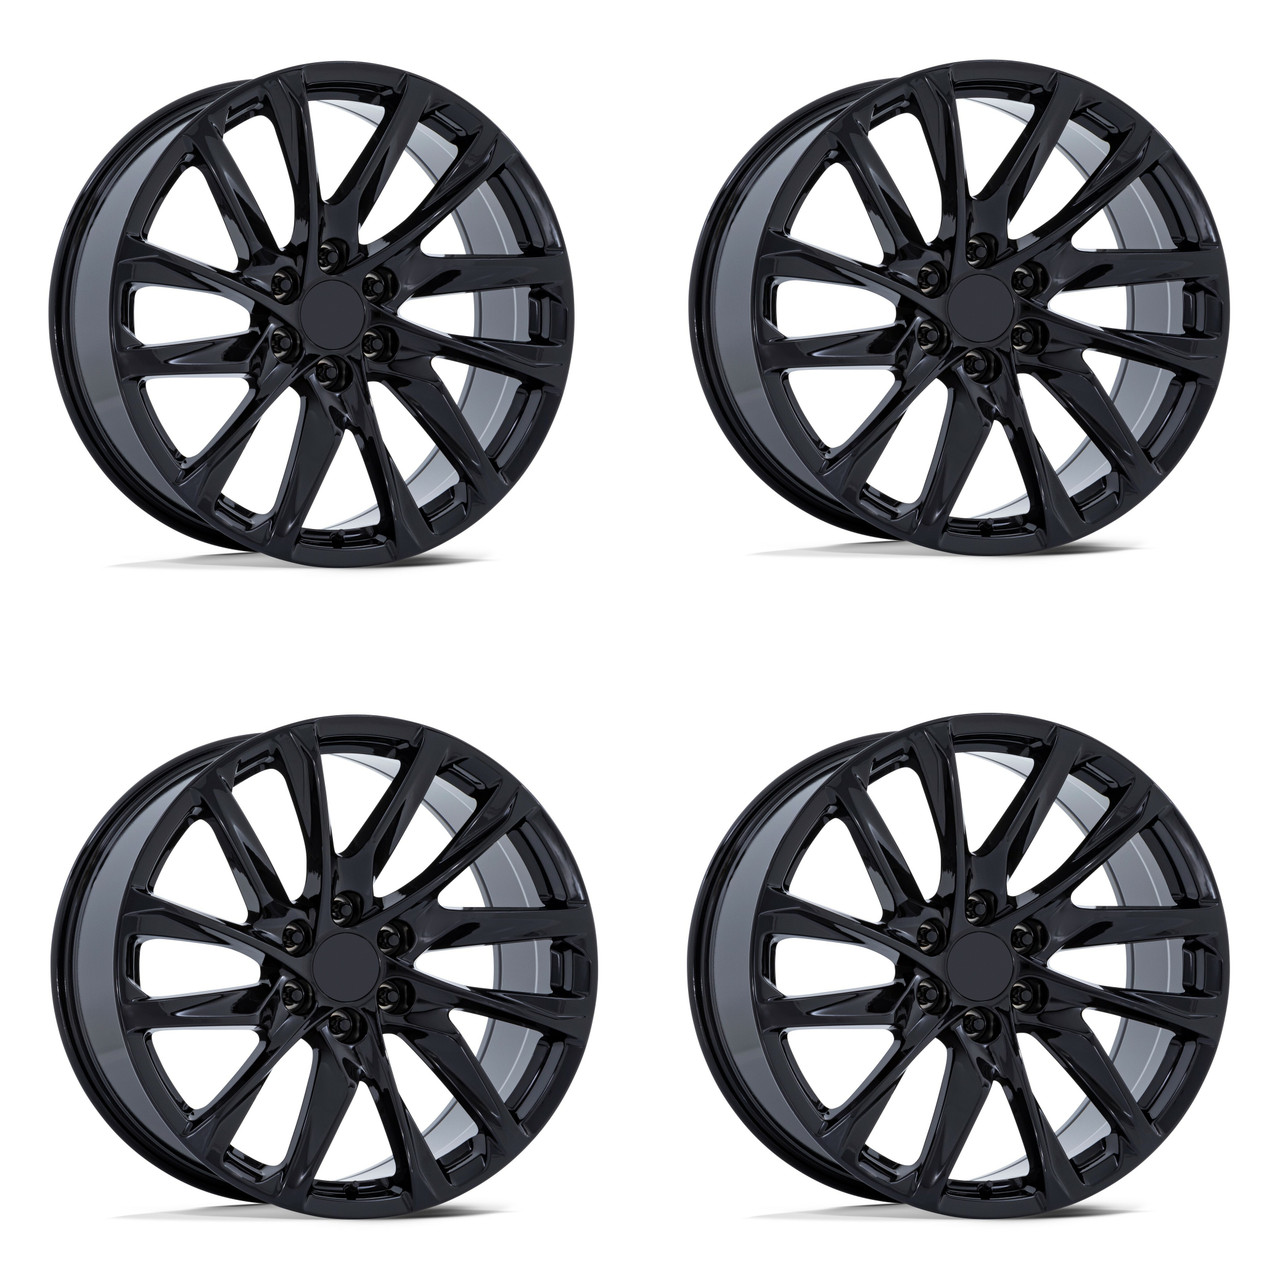 Set 4 Performance Replicas PR213 22x9 6x5.5 Gloss Black Wheels 22" 28mm Rims